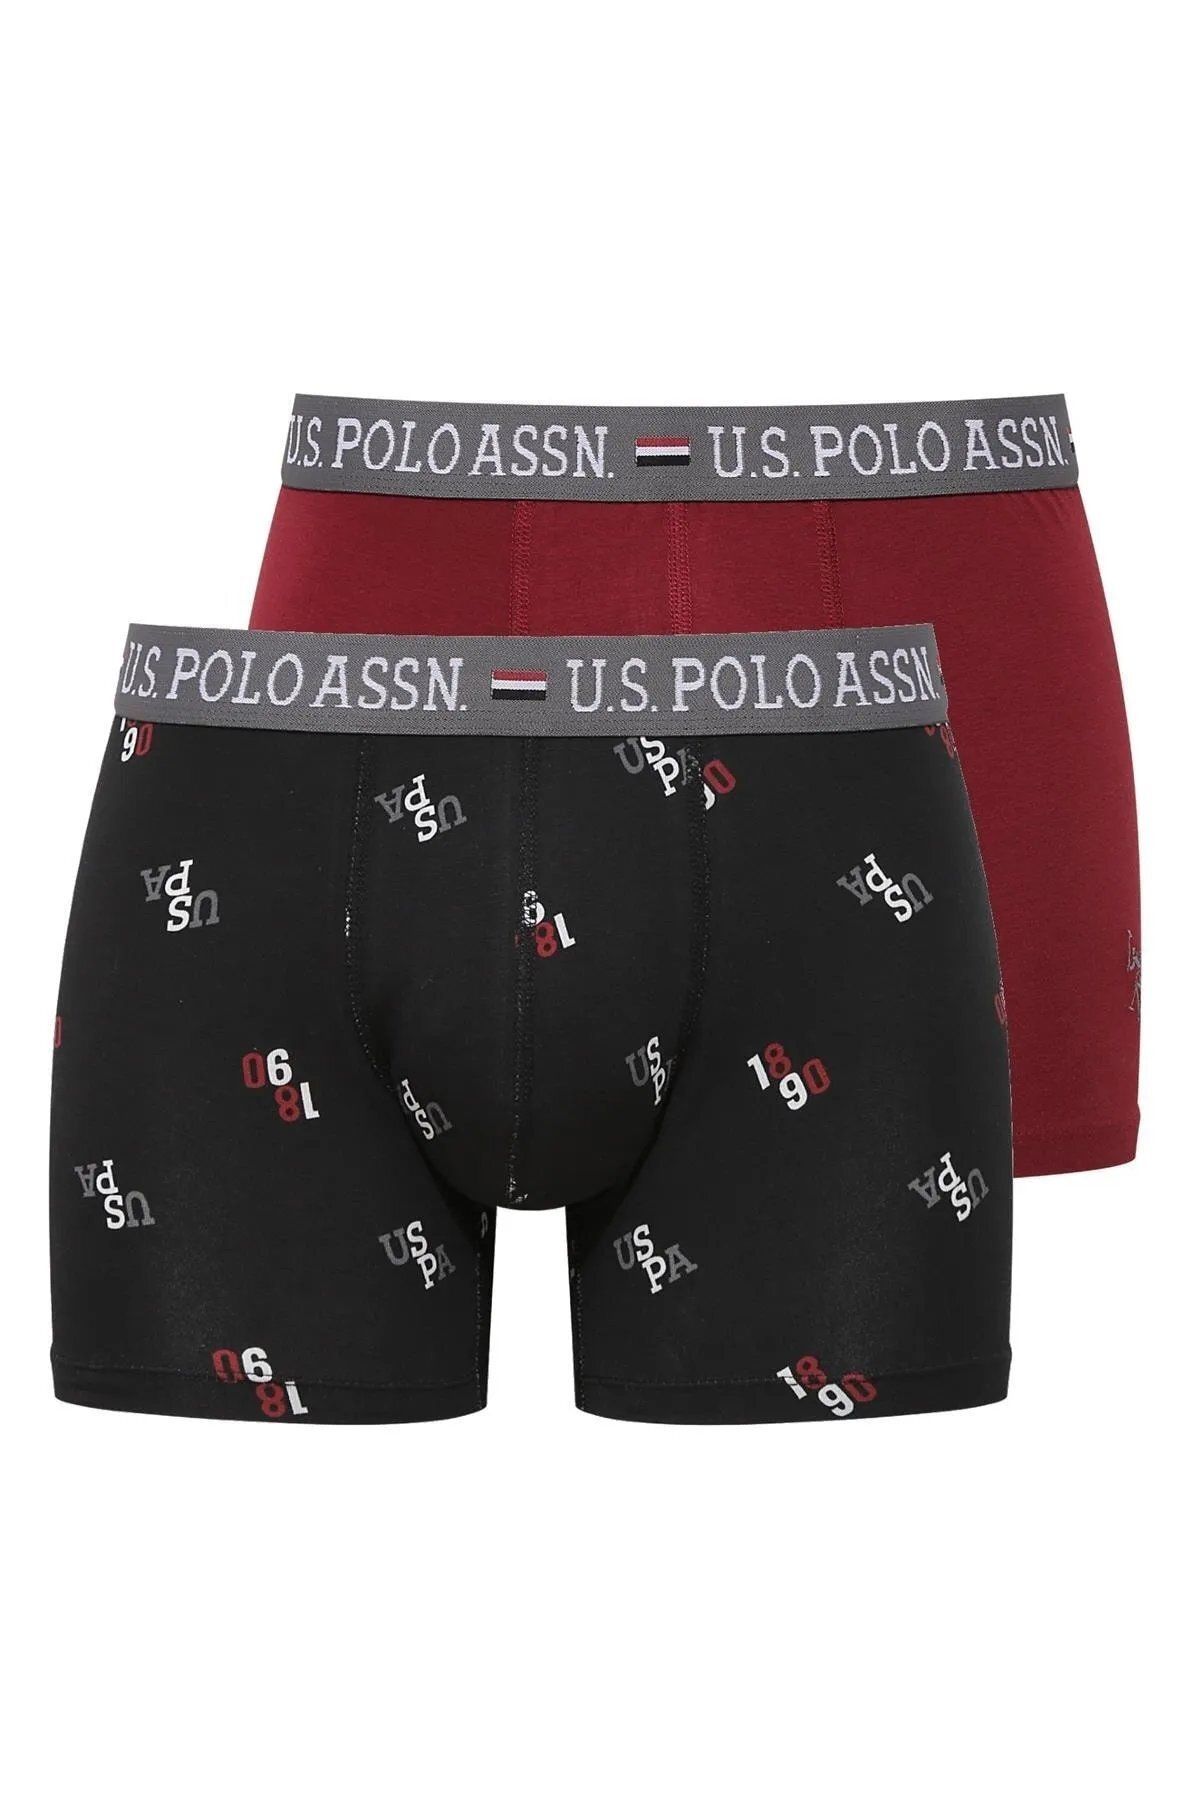 U.S. Polo Assn. U.S. Polo Assn. Düz Renk Ve Desenli, Modal Pamuk, 2'Lİ Erkek Boxer Paketi E.L.226.8.9I.28.F